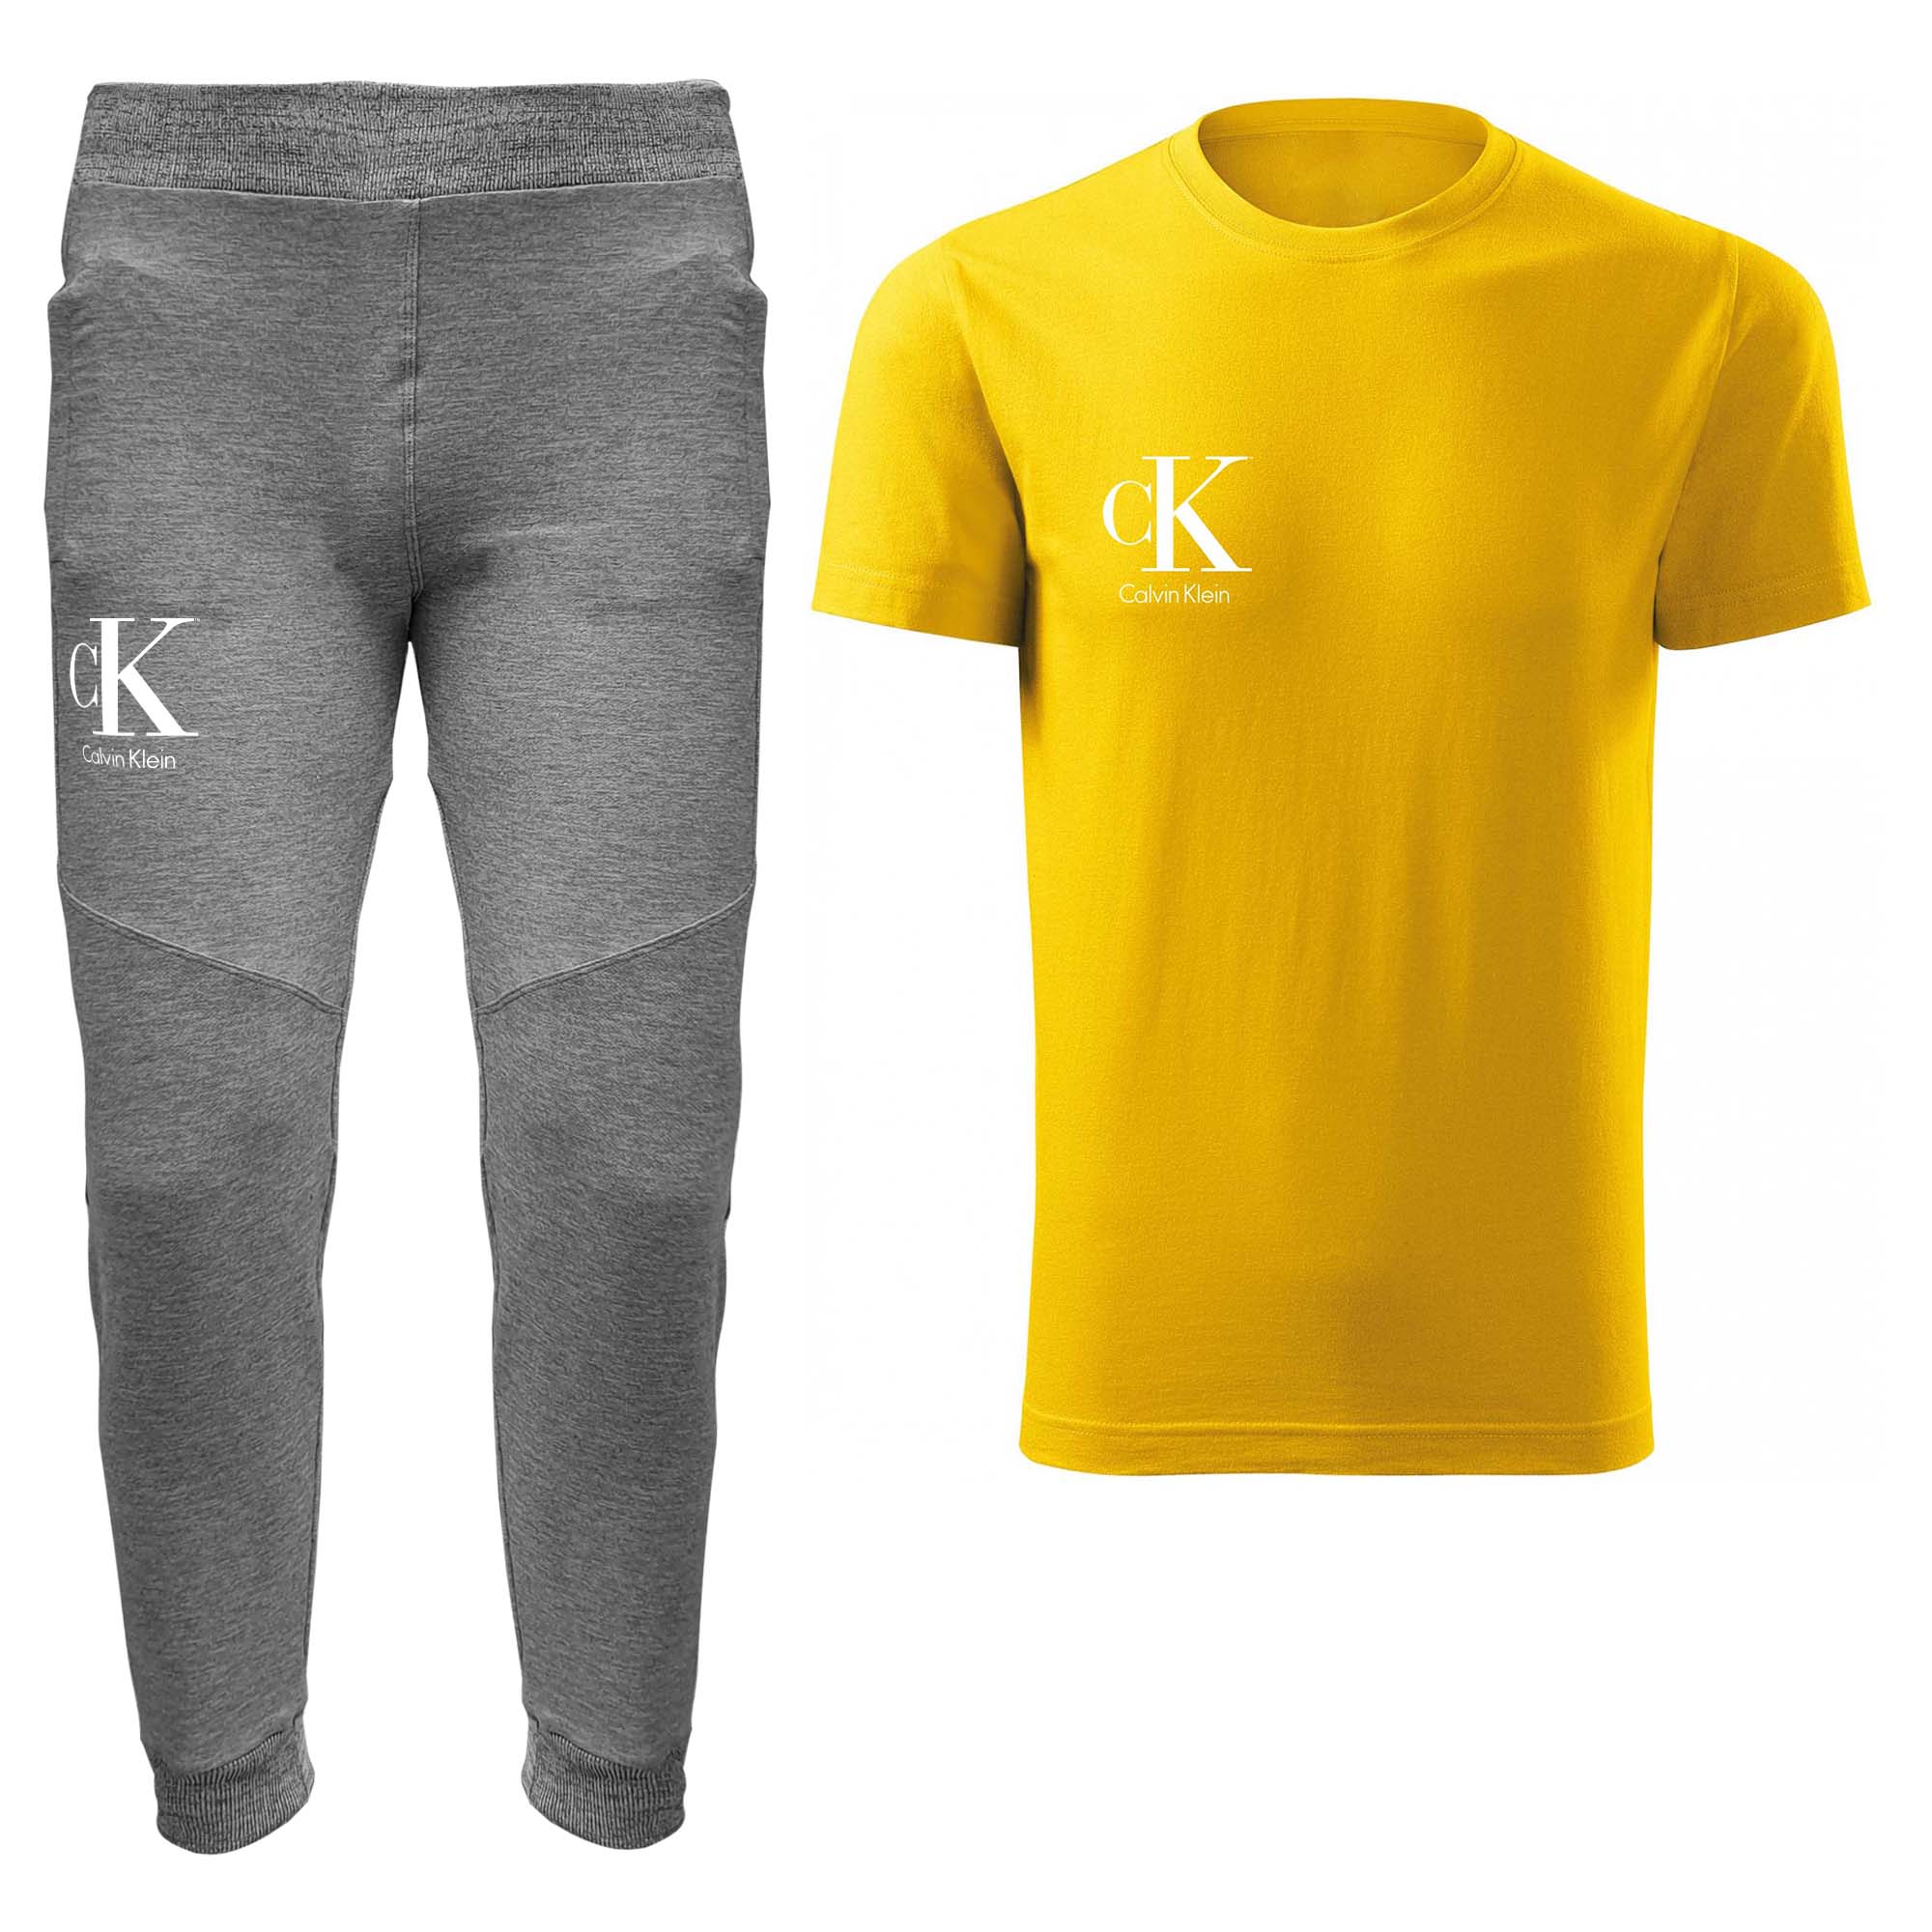 ست تی شرت و شلوار مردانه مدل 00416140 رنگ زرد